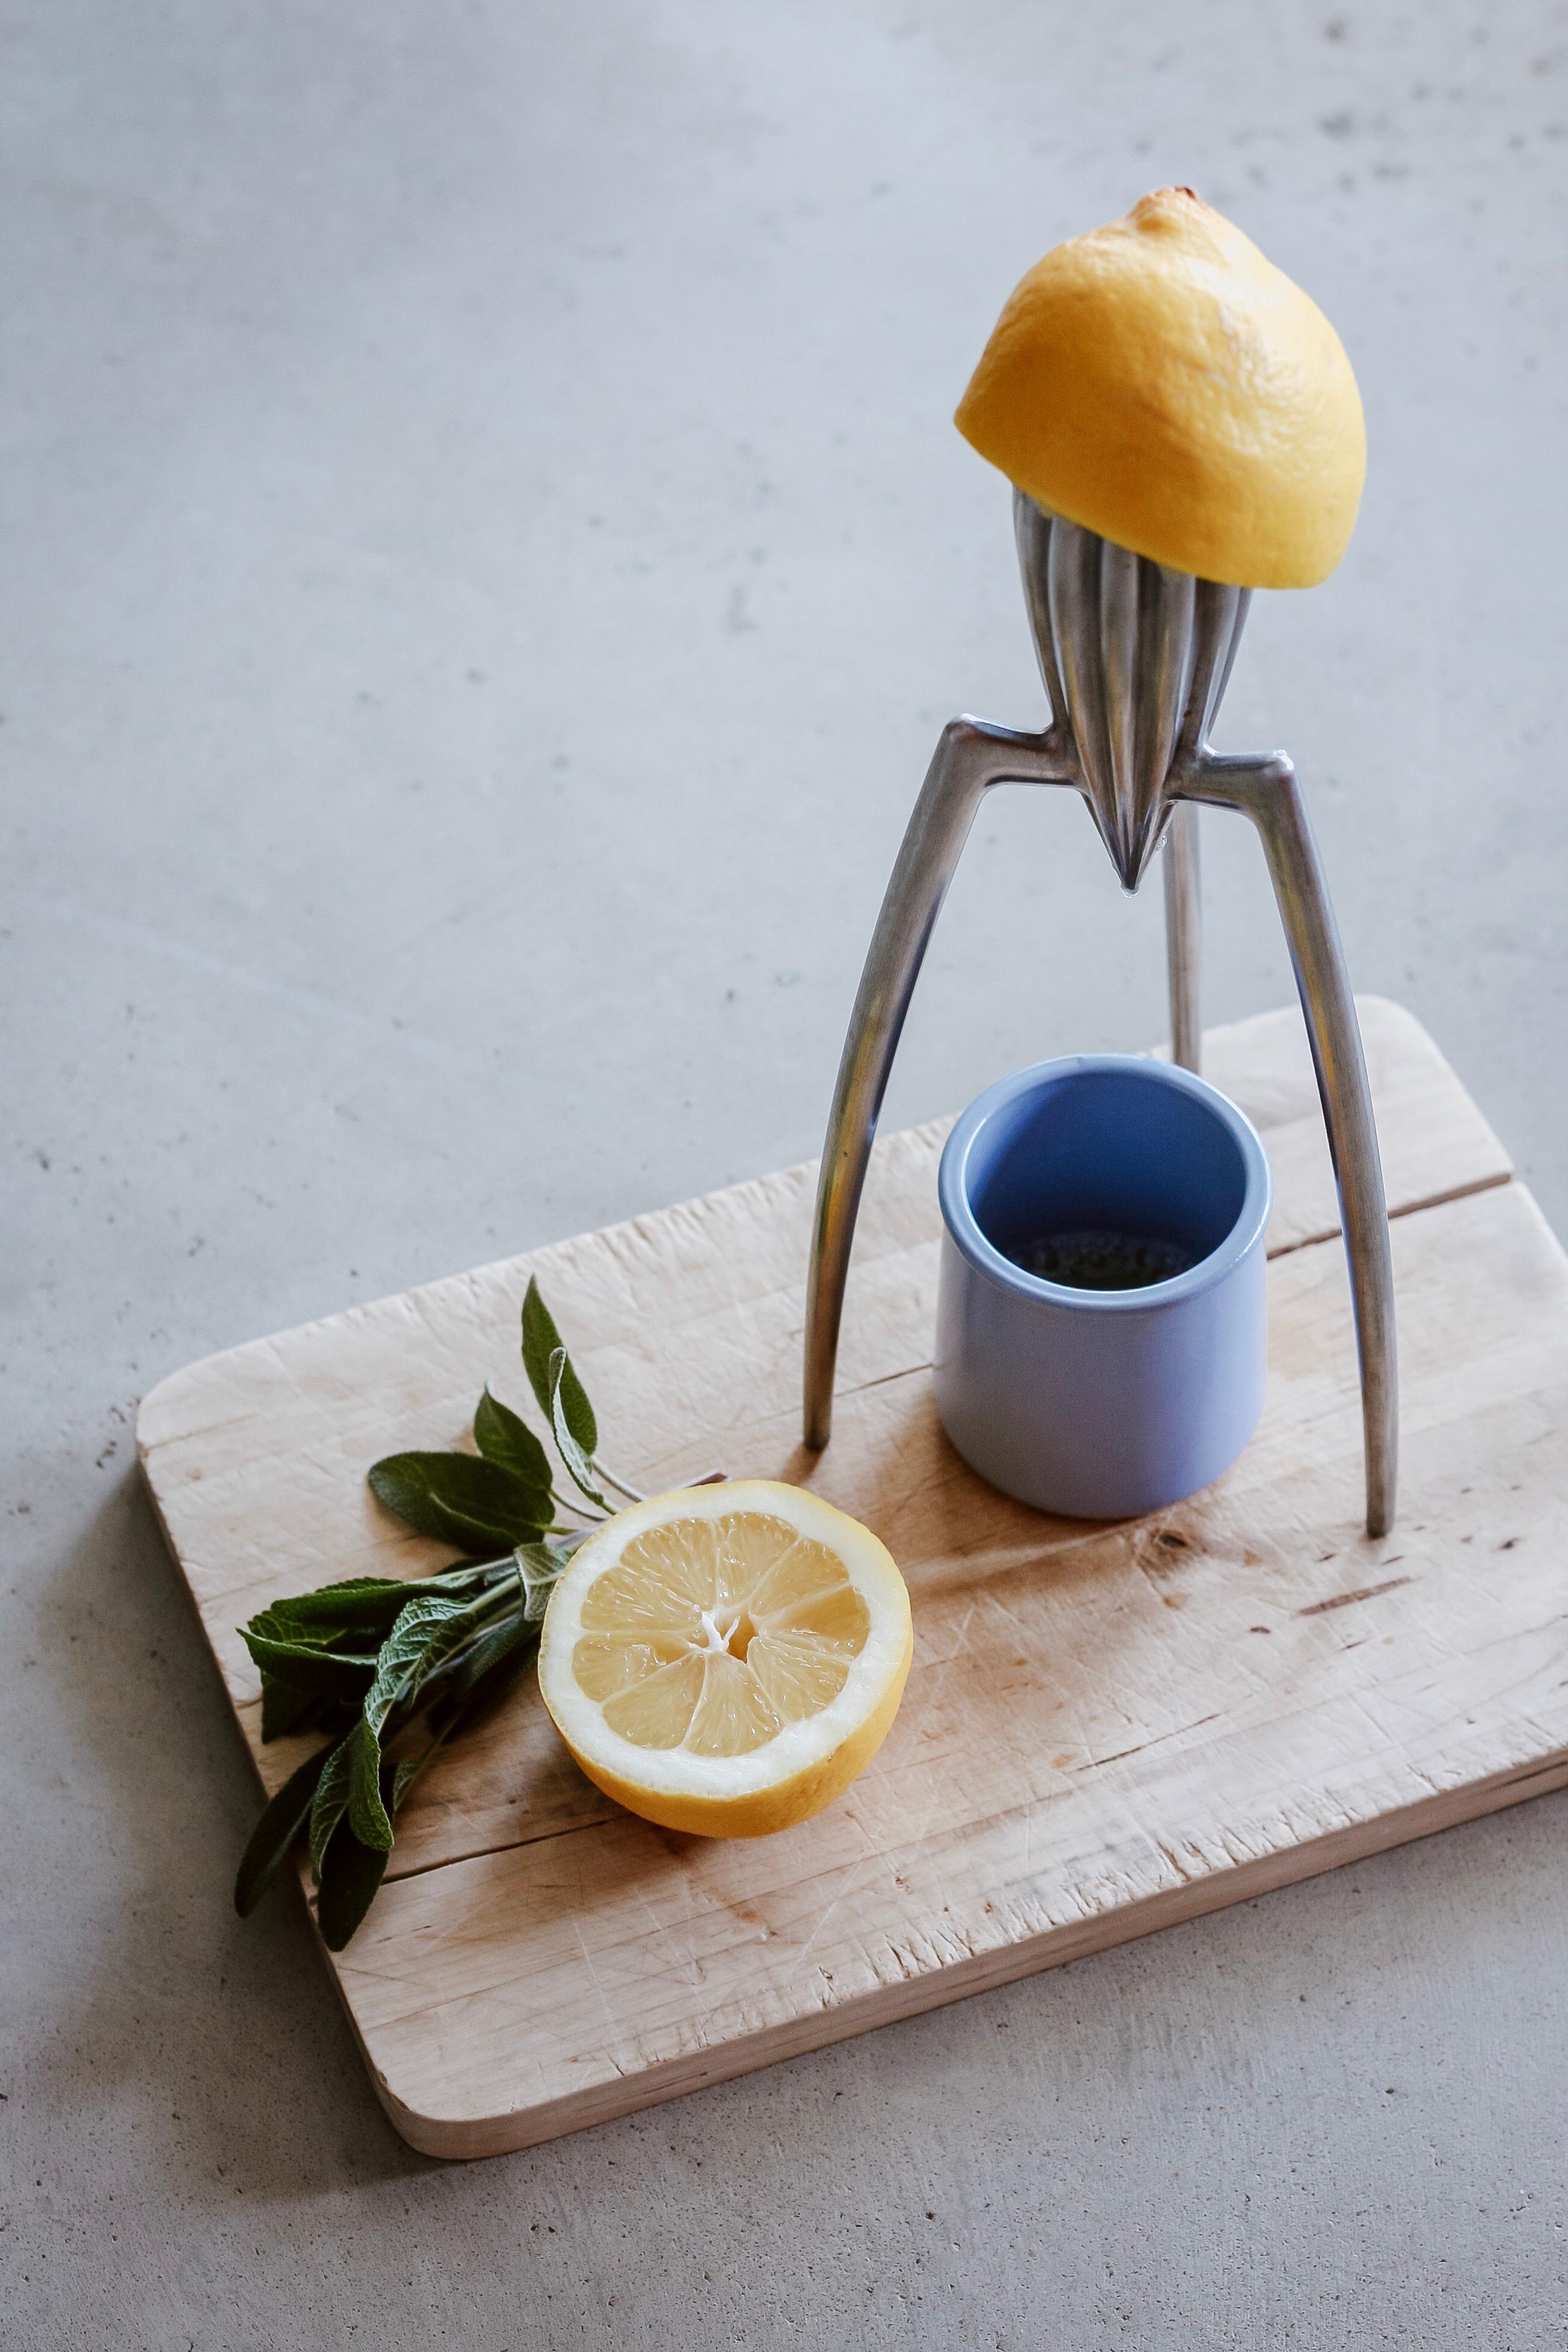 Morning Routine 🍋 #zitronenwasser #designklassiker #kitchen #alessi #zitruspresse